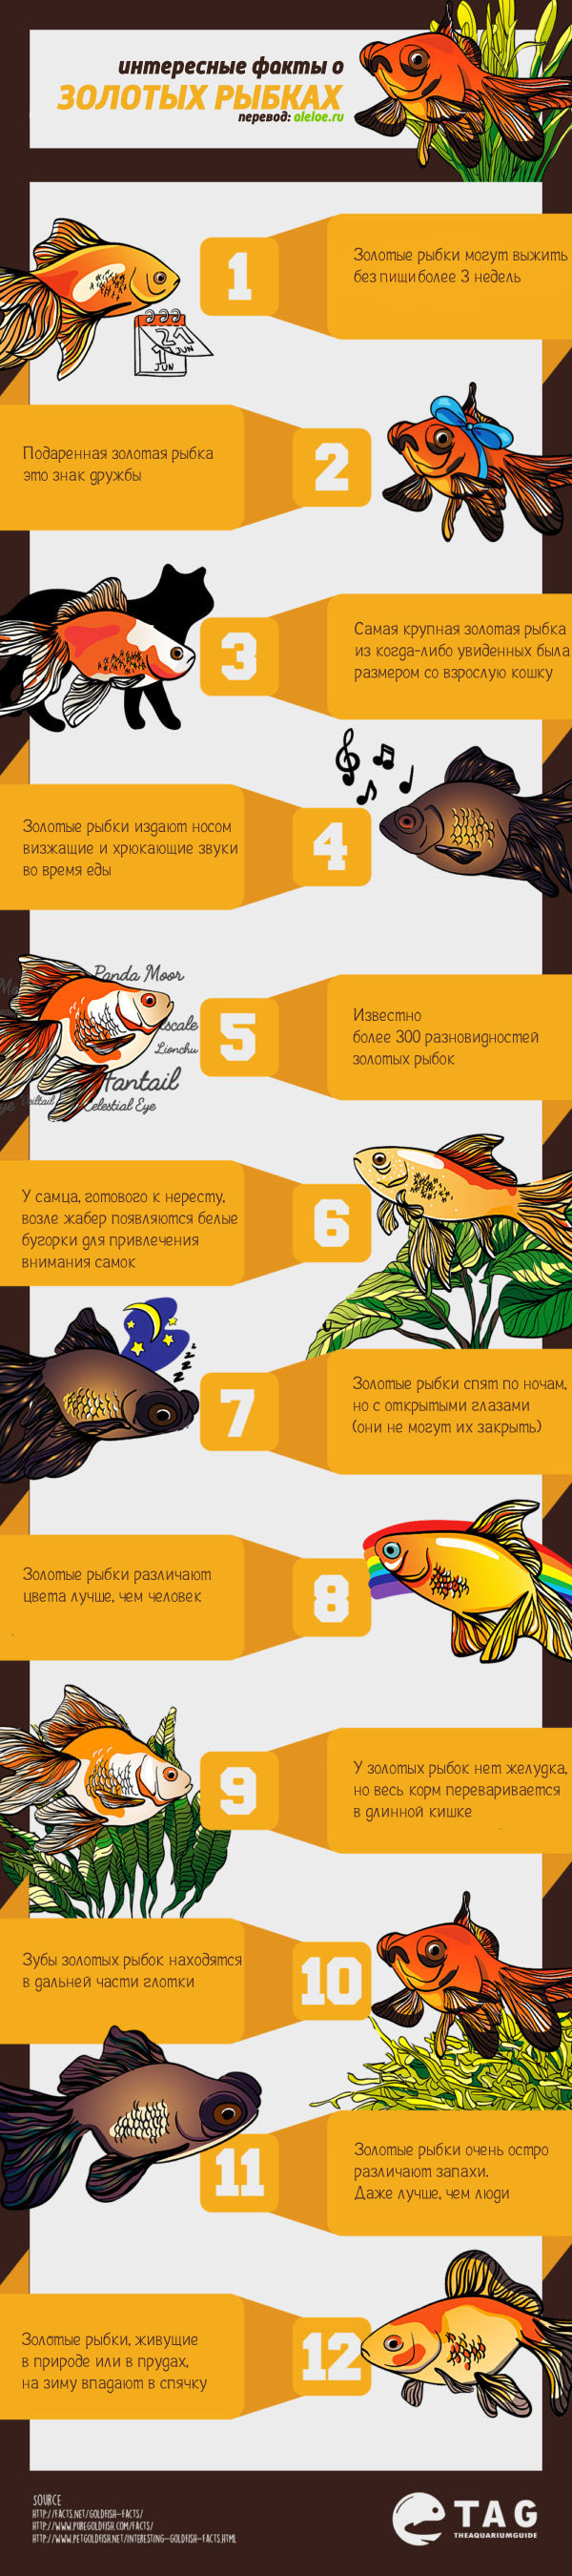 12 фактов о золотых рыбках: инфографика